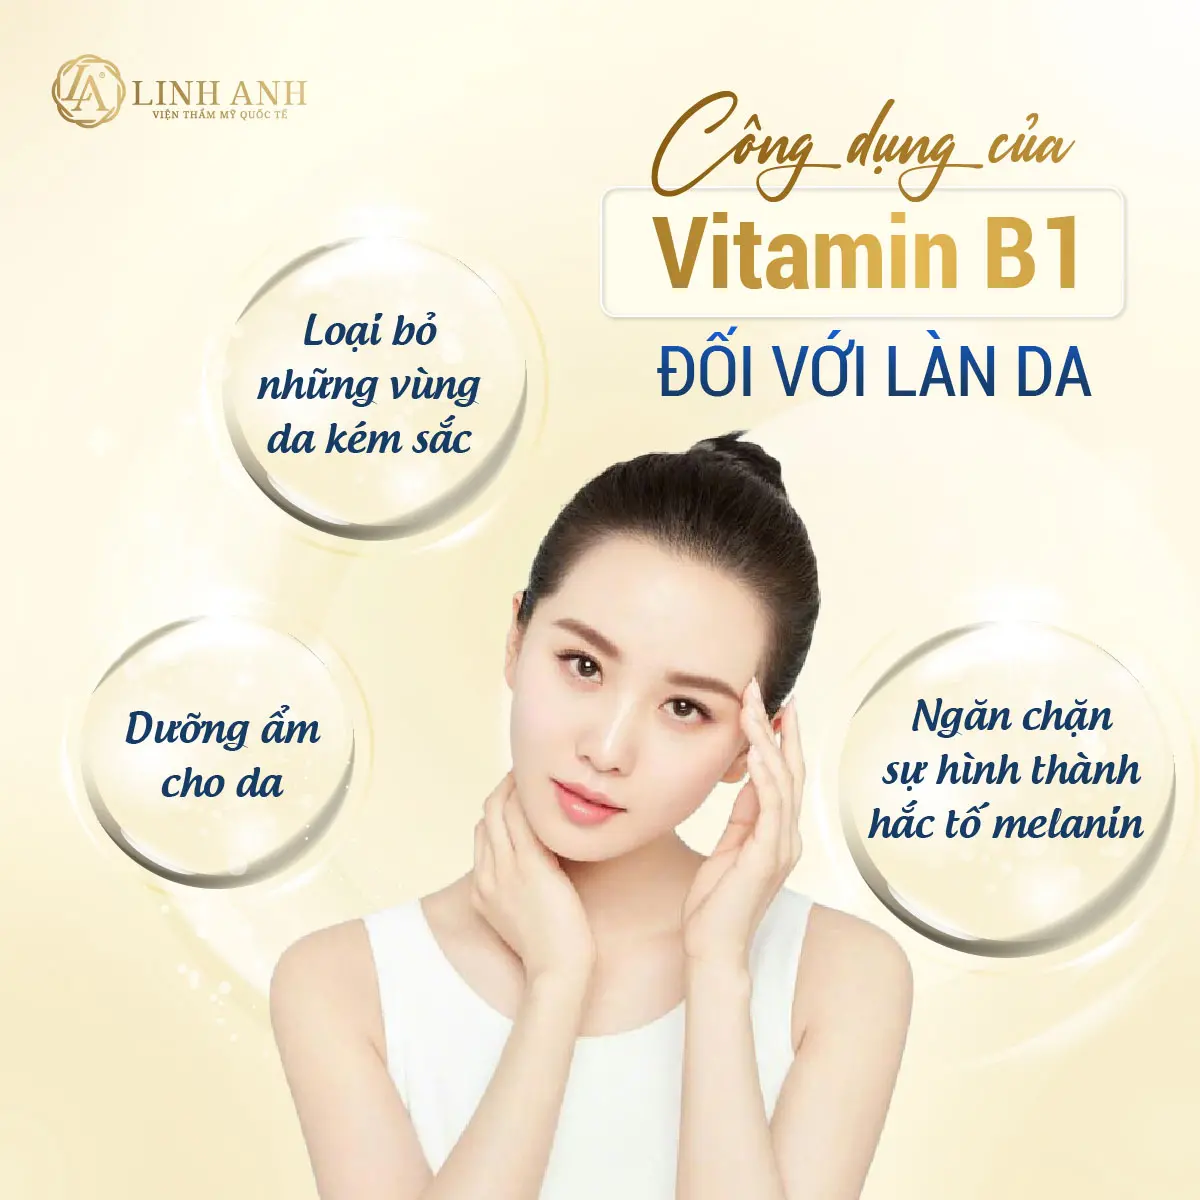 trị nám bằng vitamin b1 - Viện thẩm mỹ quốc tế Linh Anh